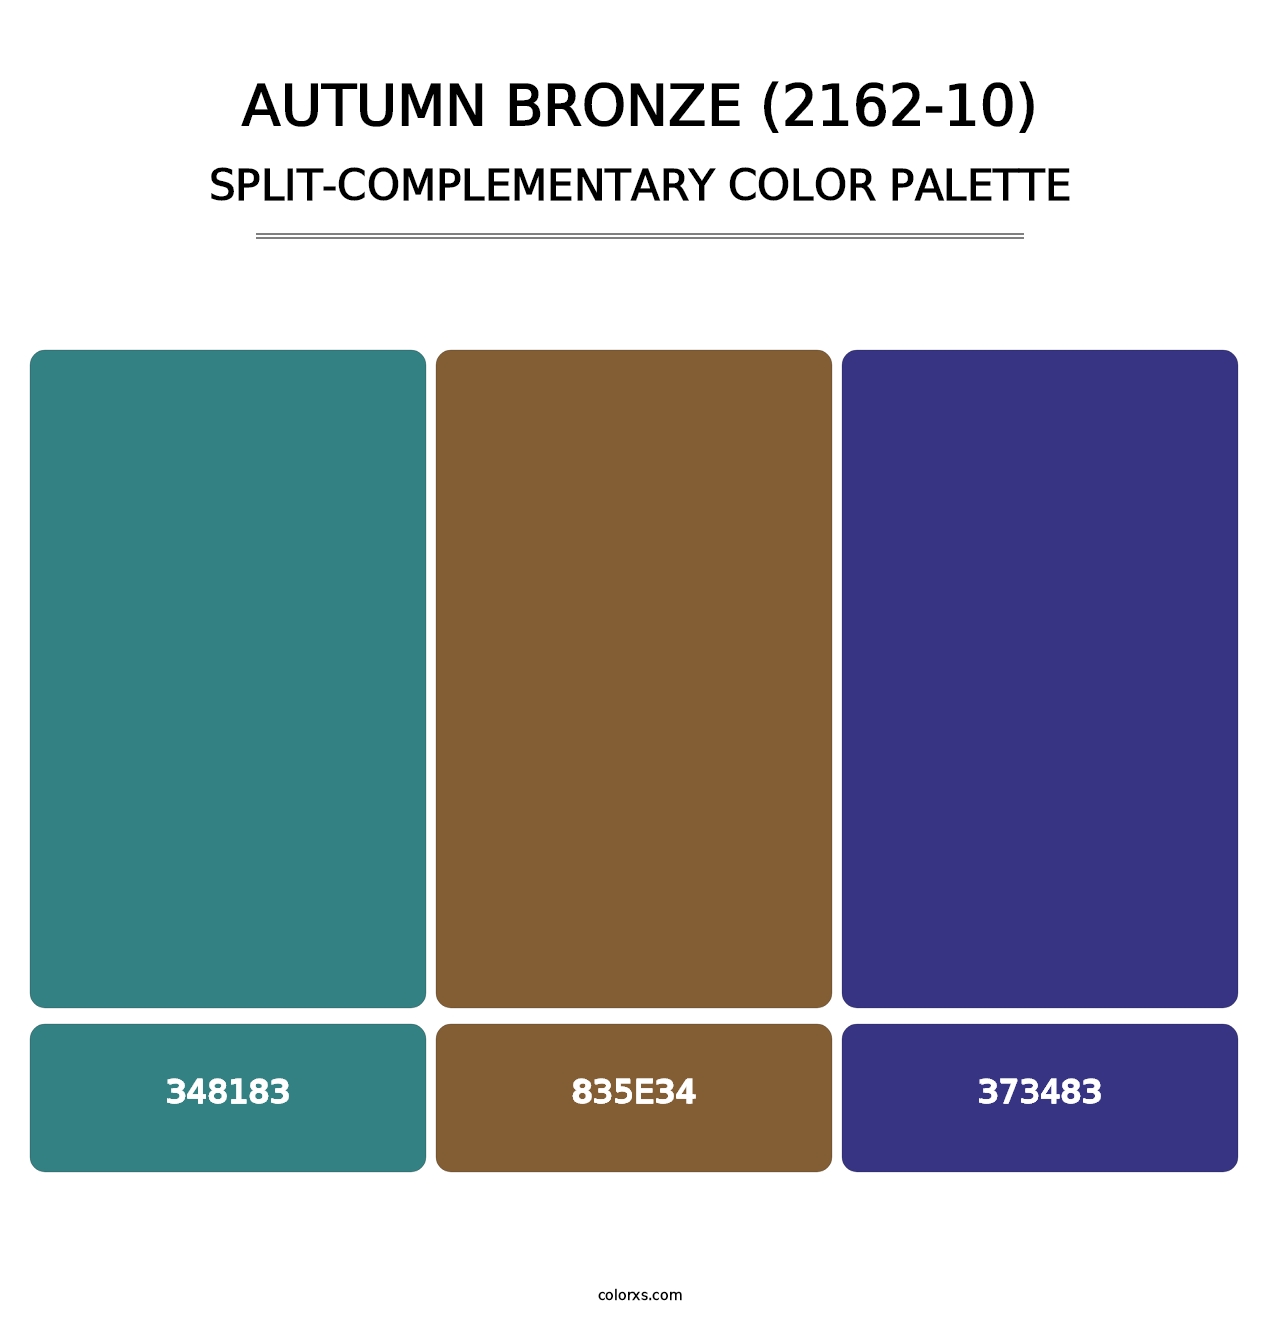 Autumn Bronze (2162-10) - Split-Complementary Color Palette